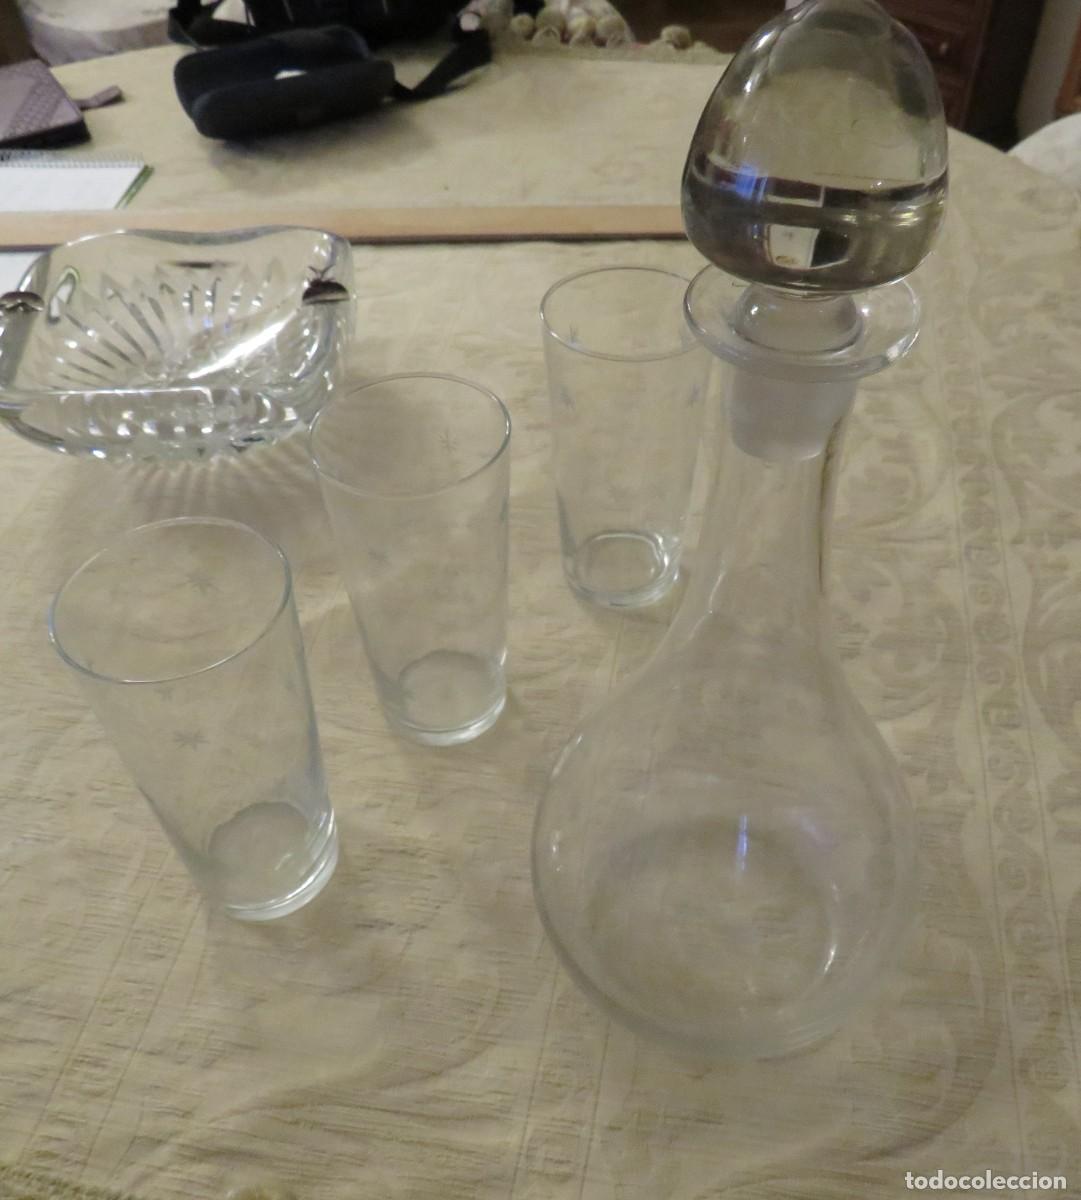 4 copas de vino cristal tallado color ámbar - Compra venta en todocoleccion